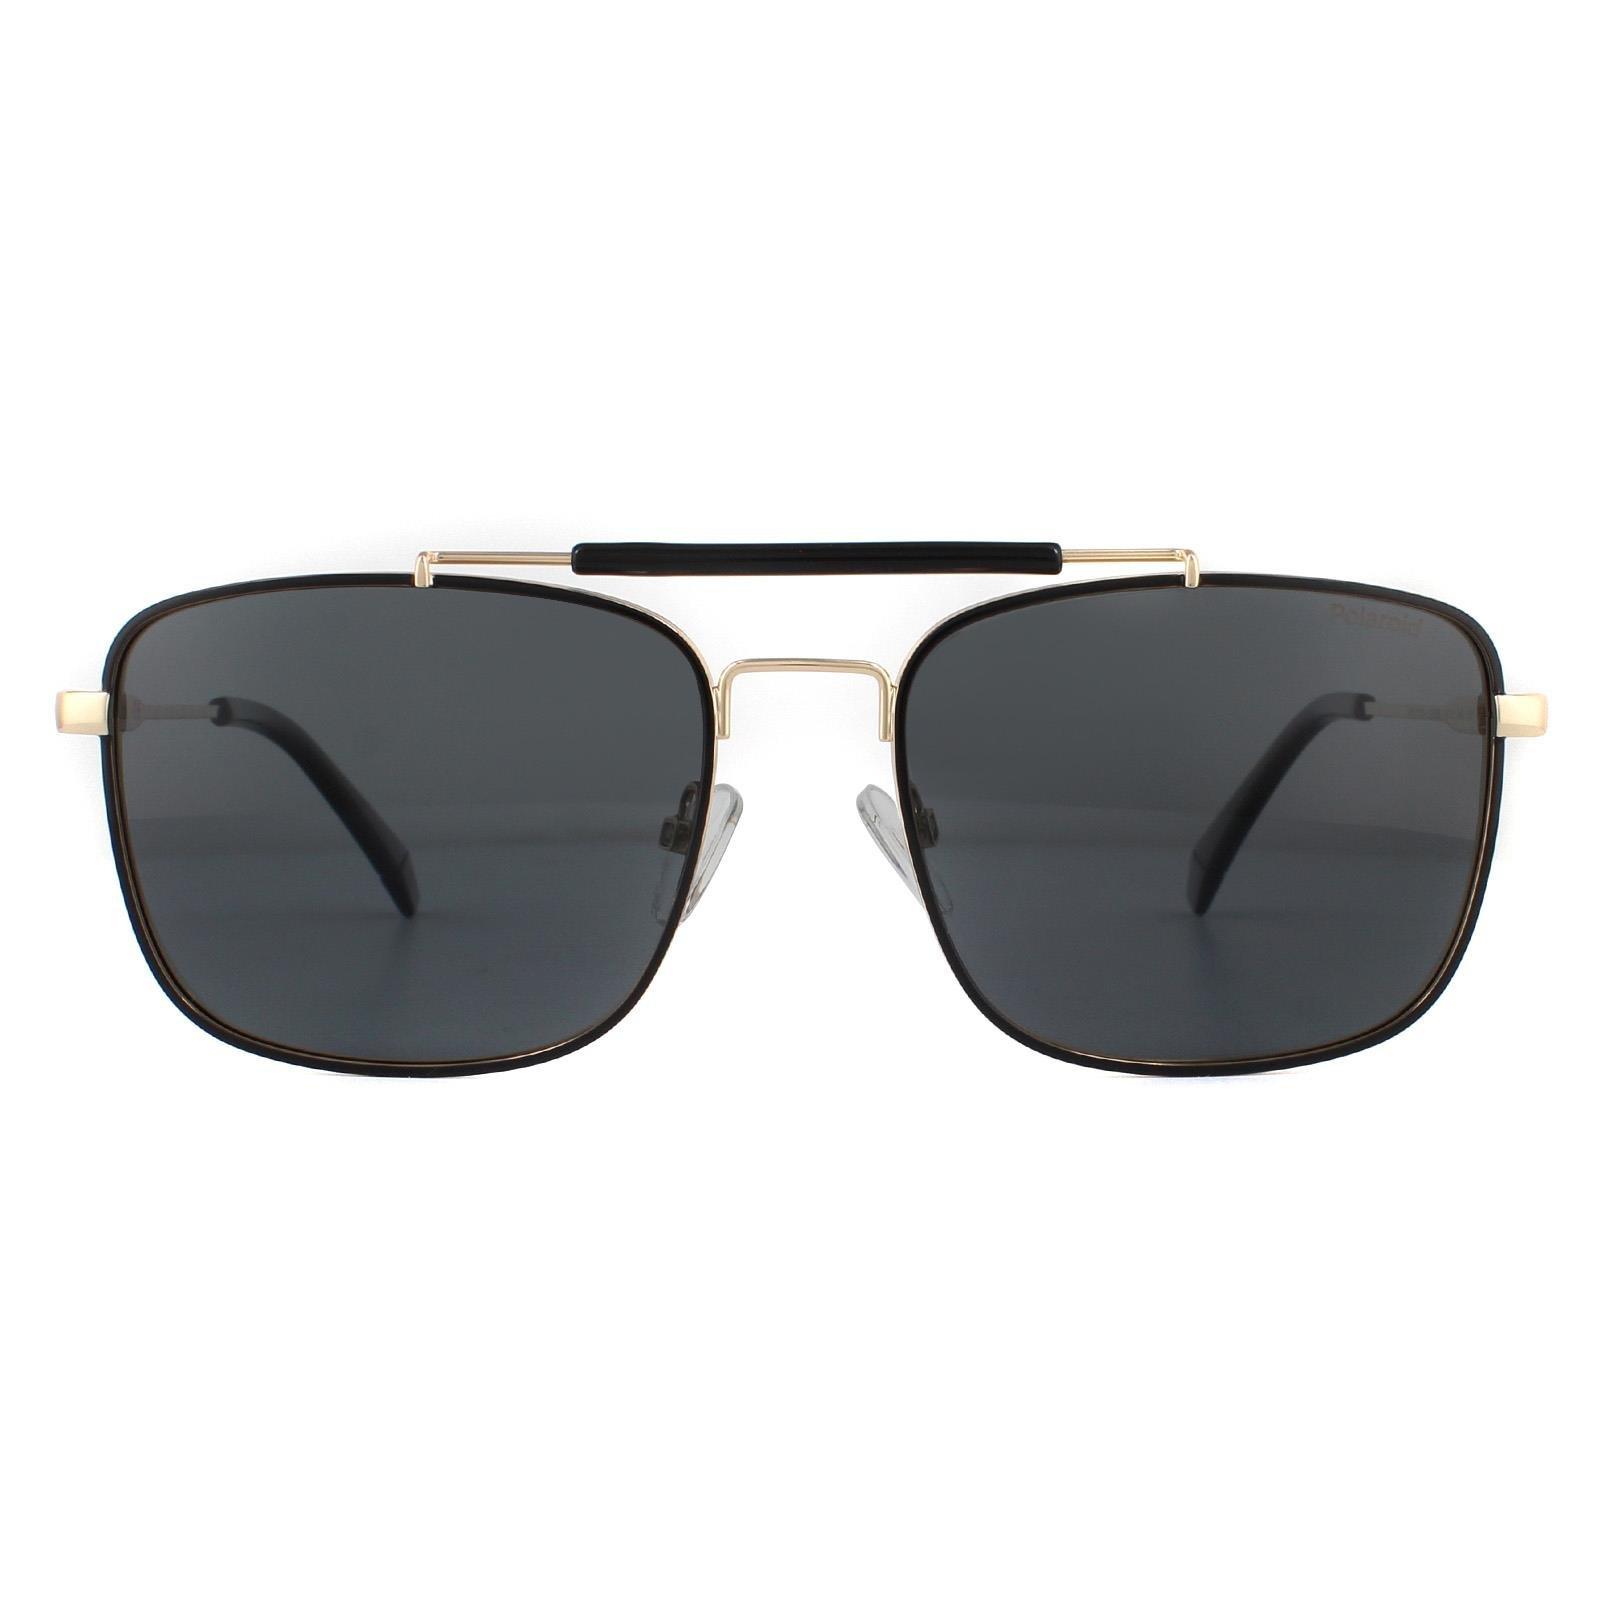 Поляризованные солнцезащитные очки Aviator Black Gold Grey Polaroid, золото polaroid pld 6174 s mu1 m9